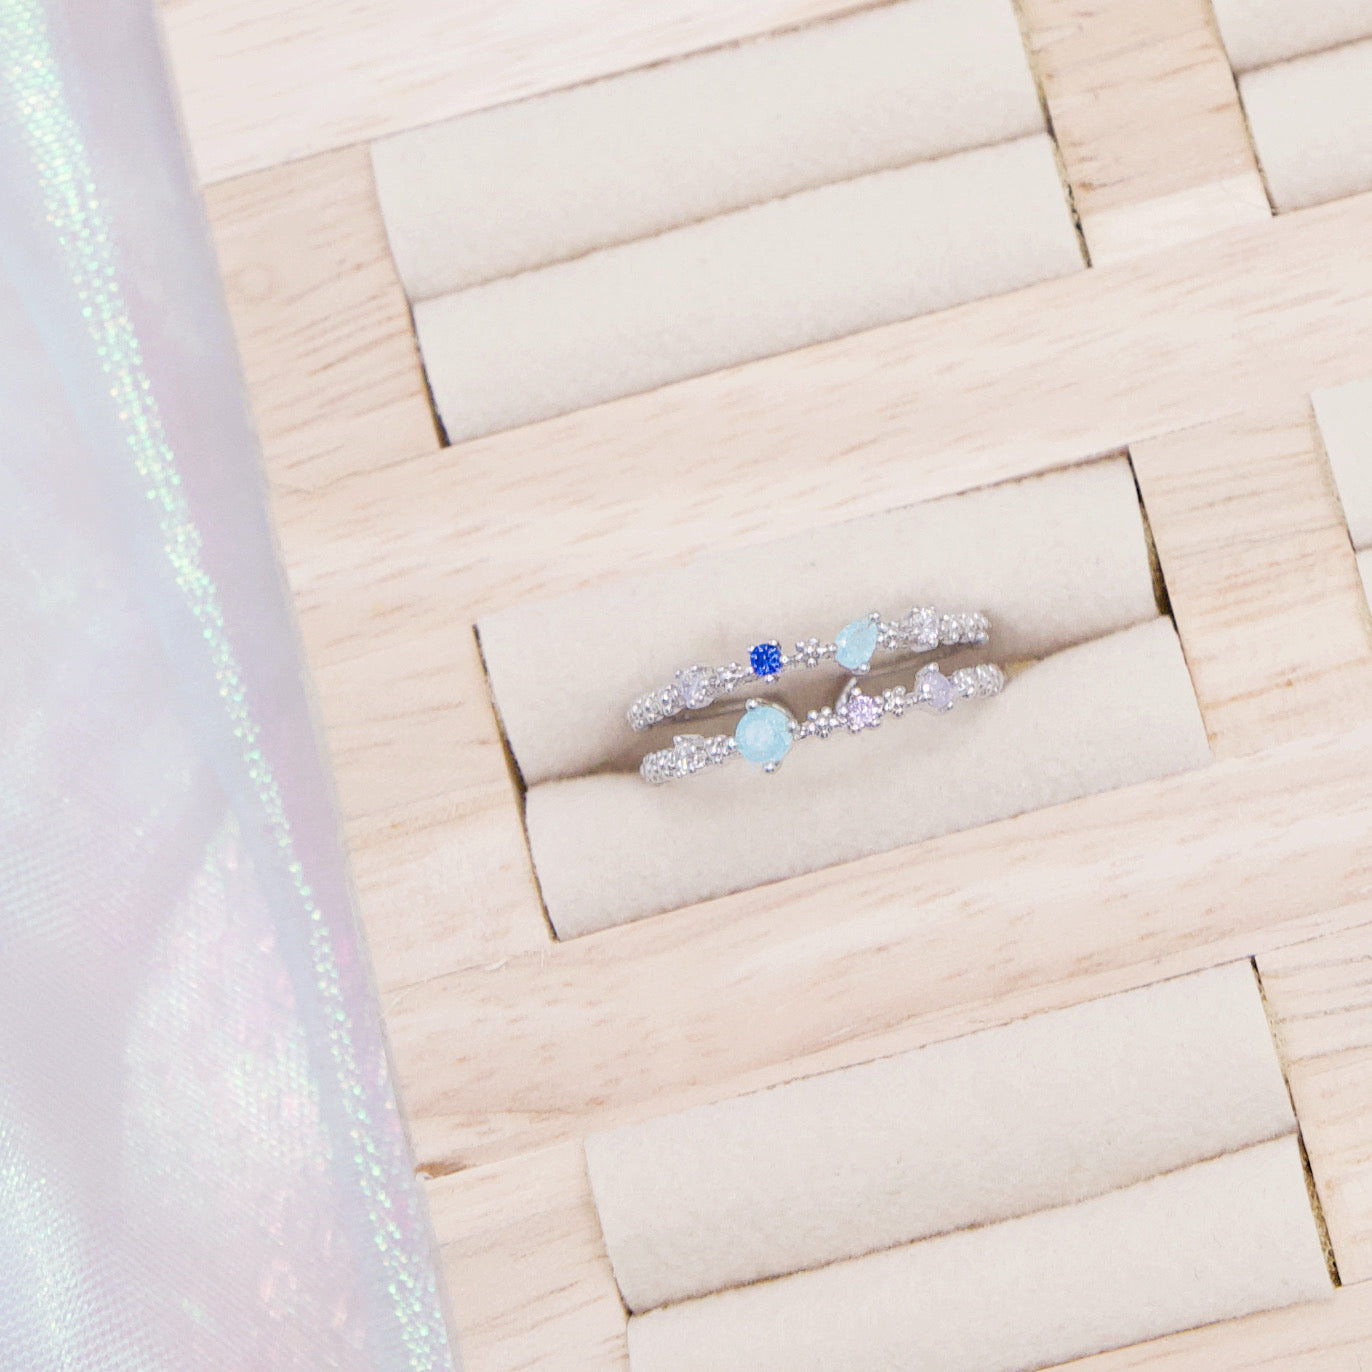 Korean Crystal Star Cute Ring - 2 colors